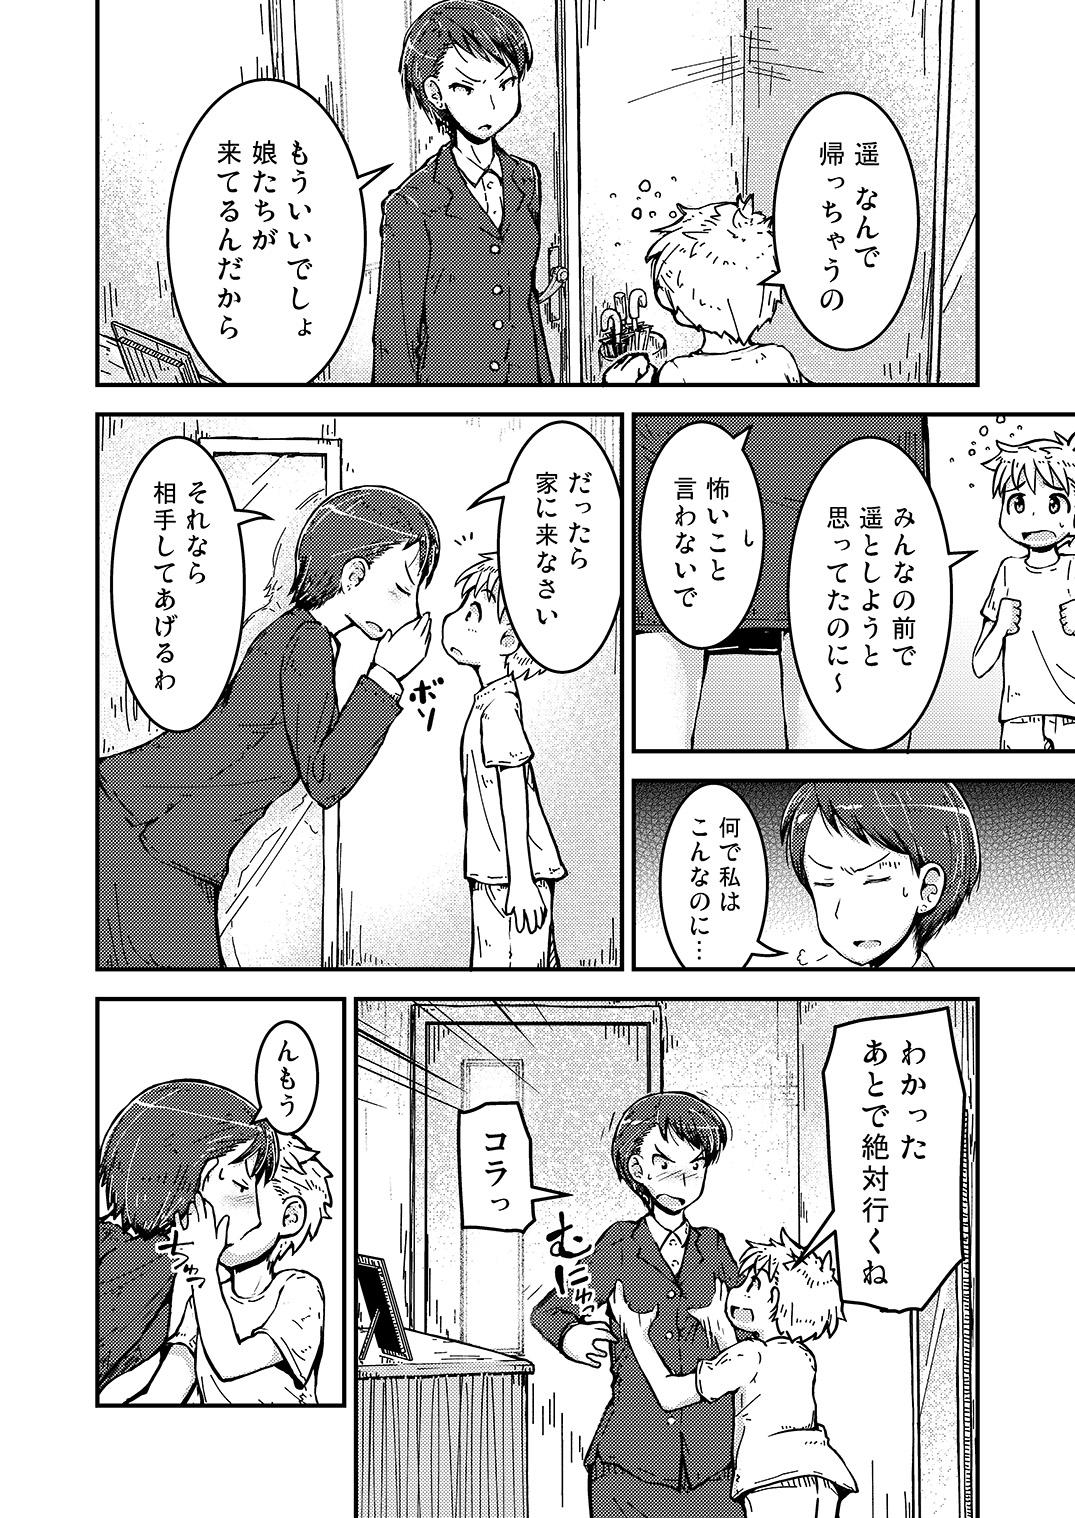 Sex Toys Ane × otōto no 2-jō 3 satsume Celebrity Sex Scene - Page 4